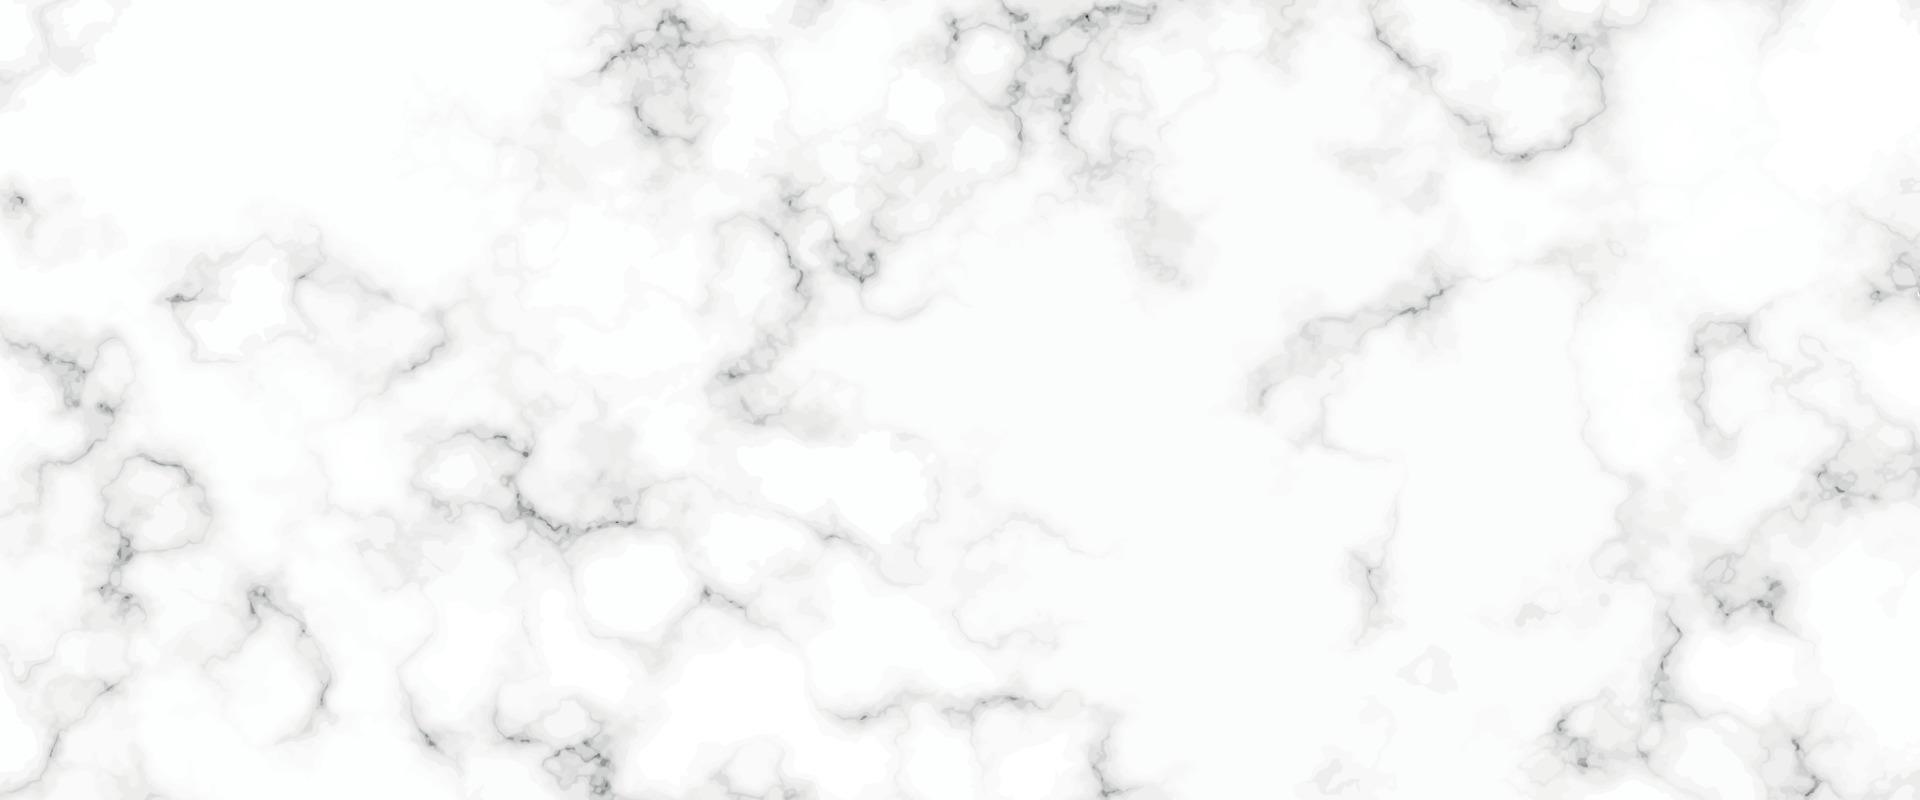 wit marmeren achtergrond structuur natuurlijk steen patroon.abstract licht elegant zwart voor Doen verdieping keramisch teller structuur steen plaat glad tegel grijs zilver.marmer structuur voor huid tegel luxueus ontwerp vector